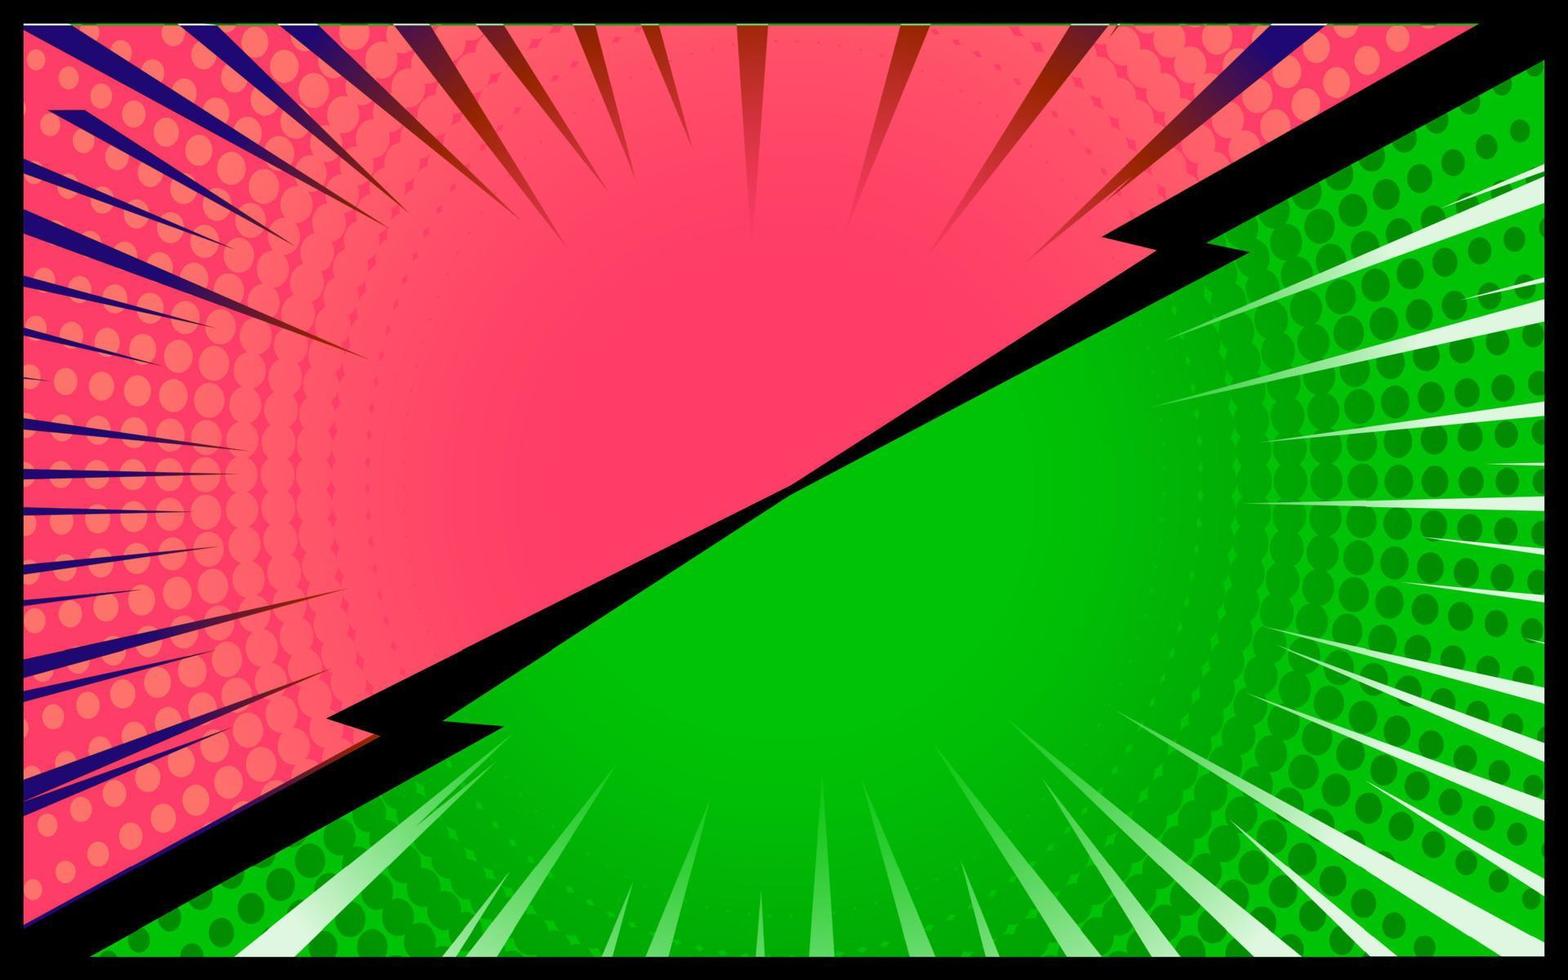 Retro-Vektor des grünen und rosa komischen Hintergrundes vektor